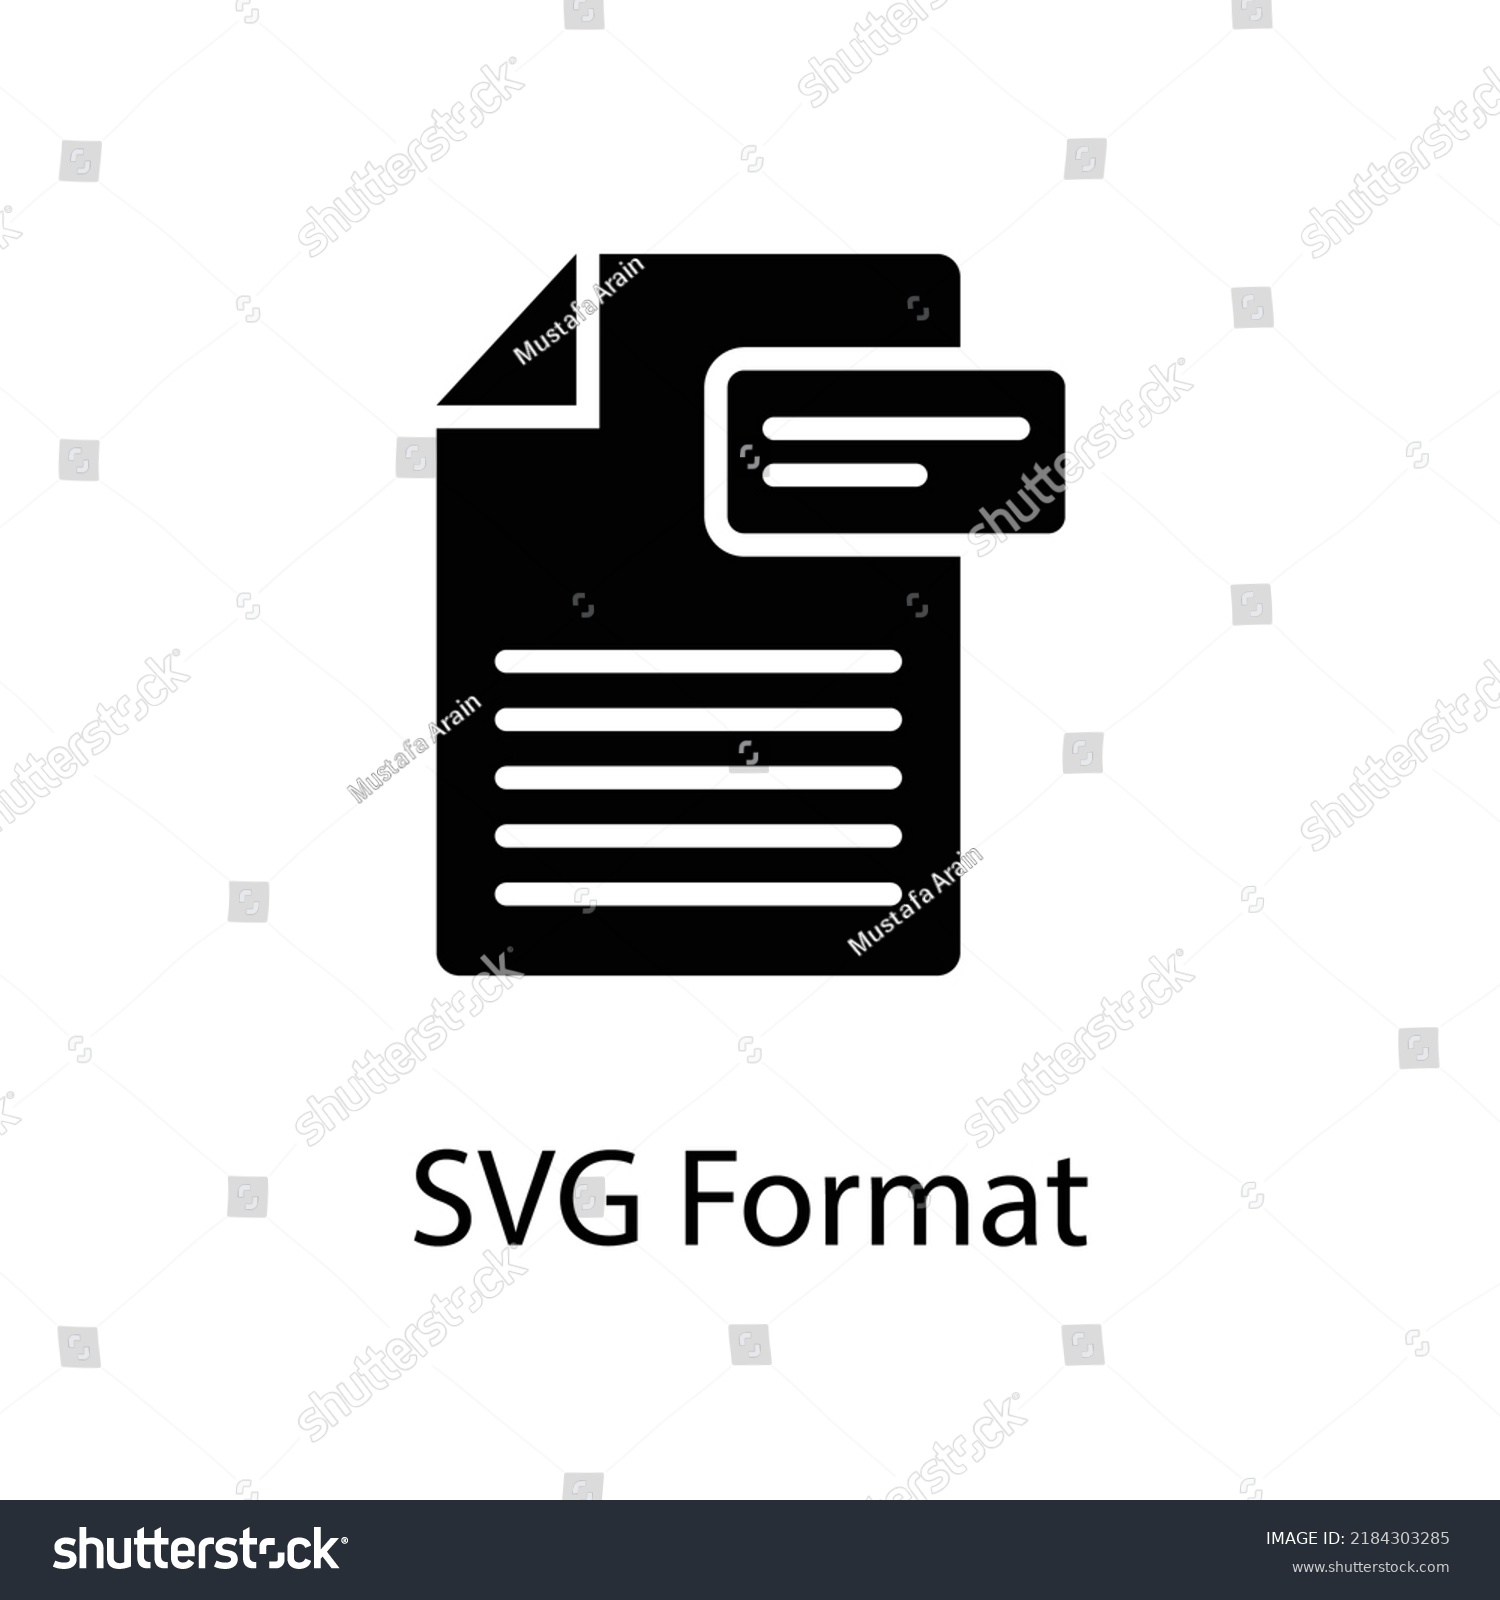 SVG of SVG Format vector Solid Icon Design illustration on White background. EPS 10 File  svg